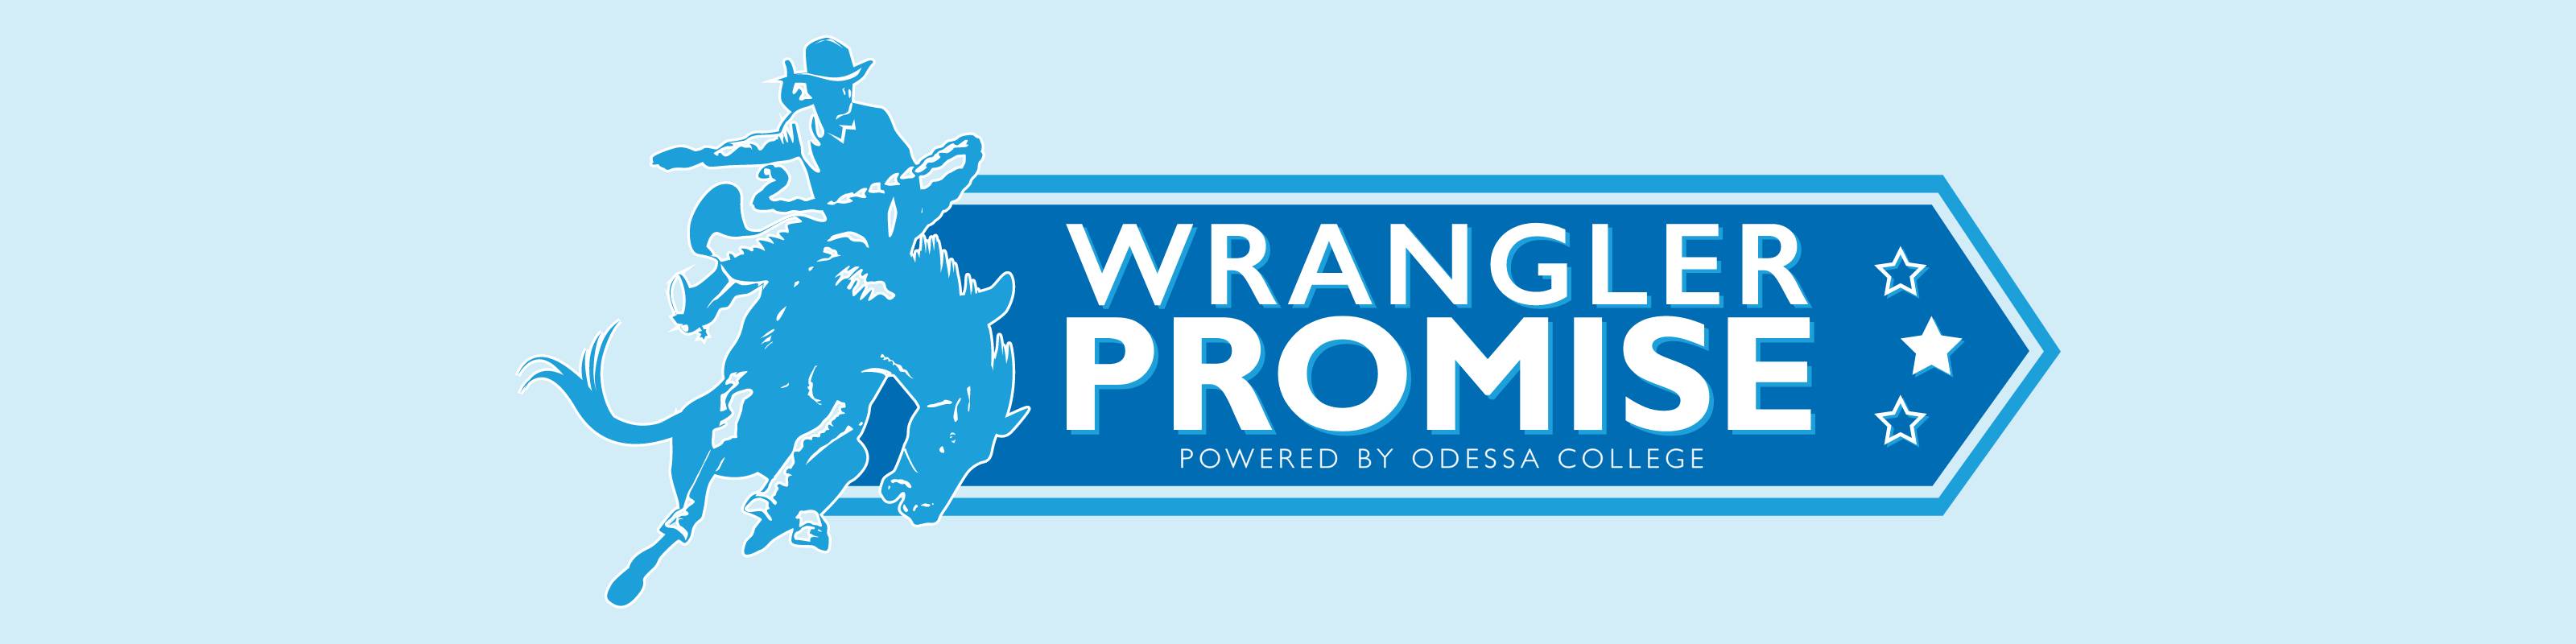 Wrangler Promise Banner